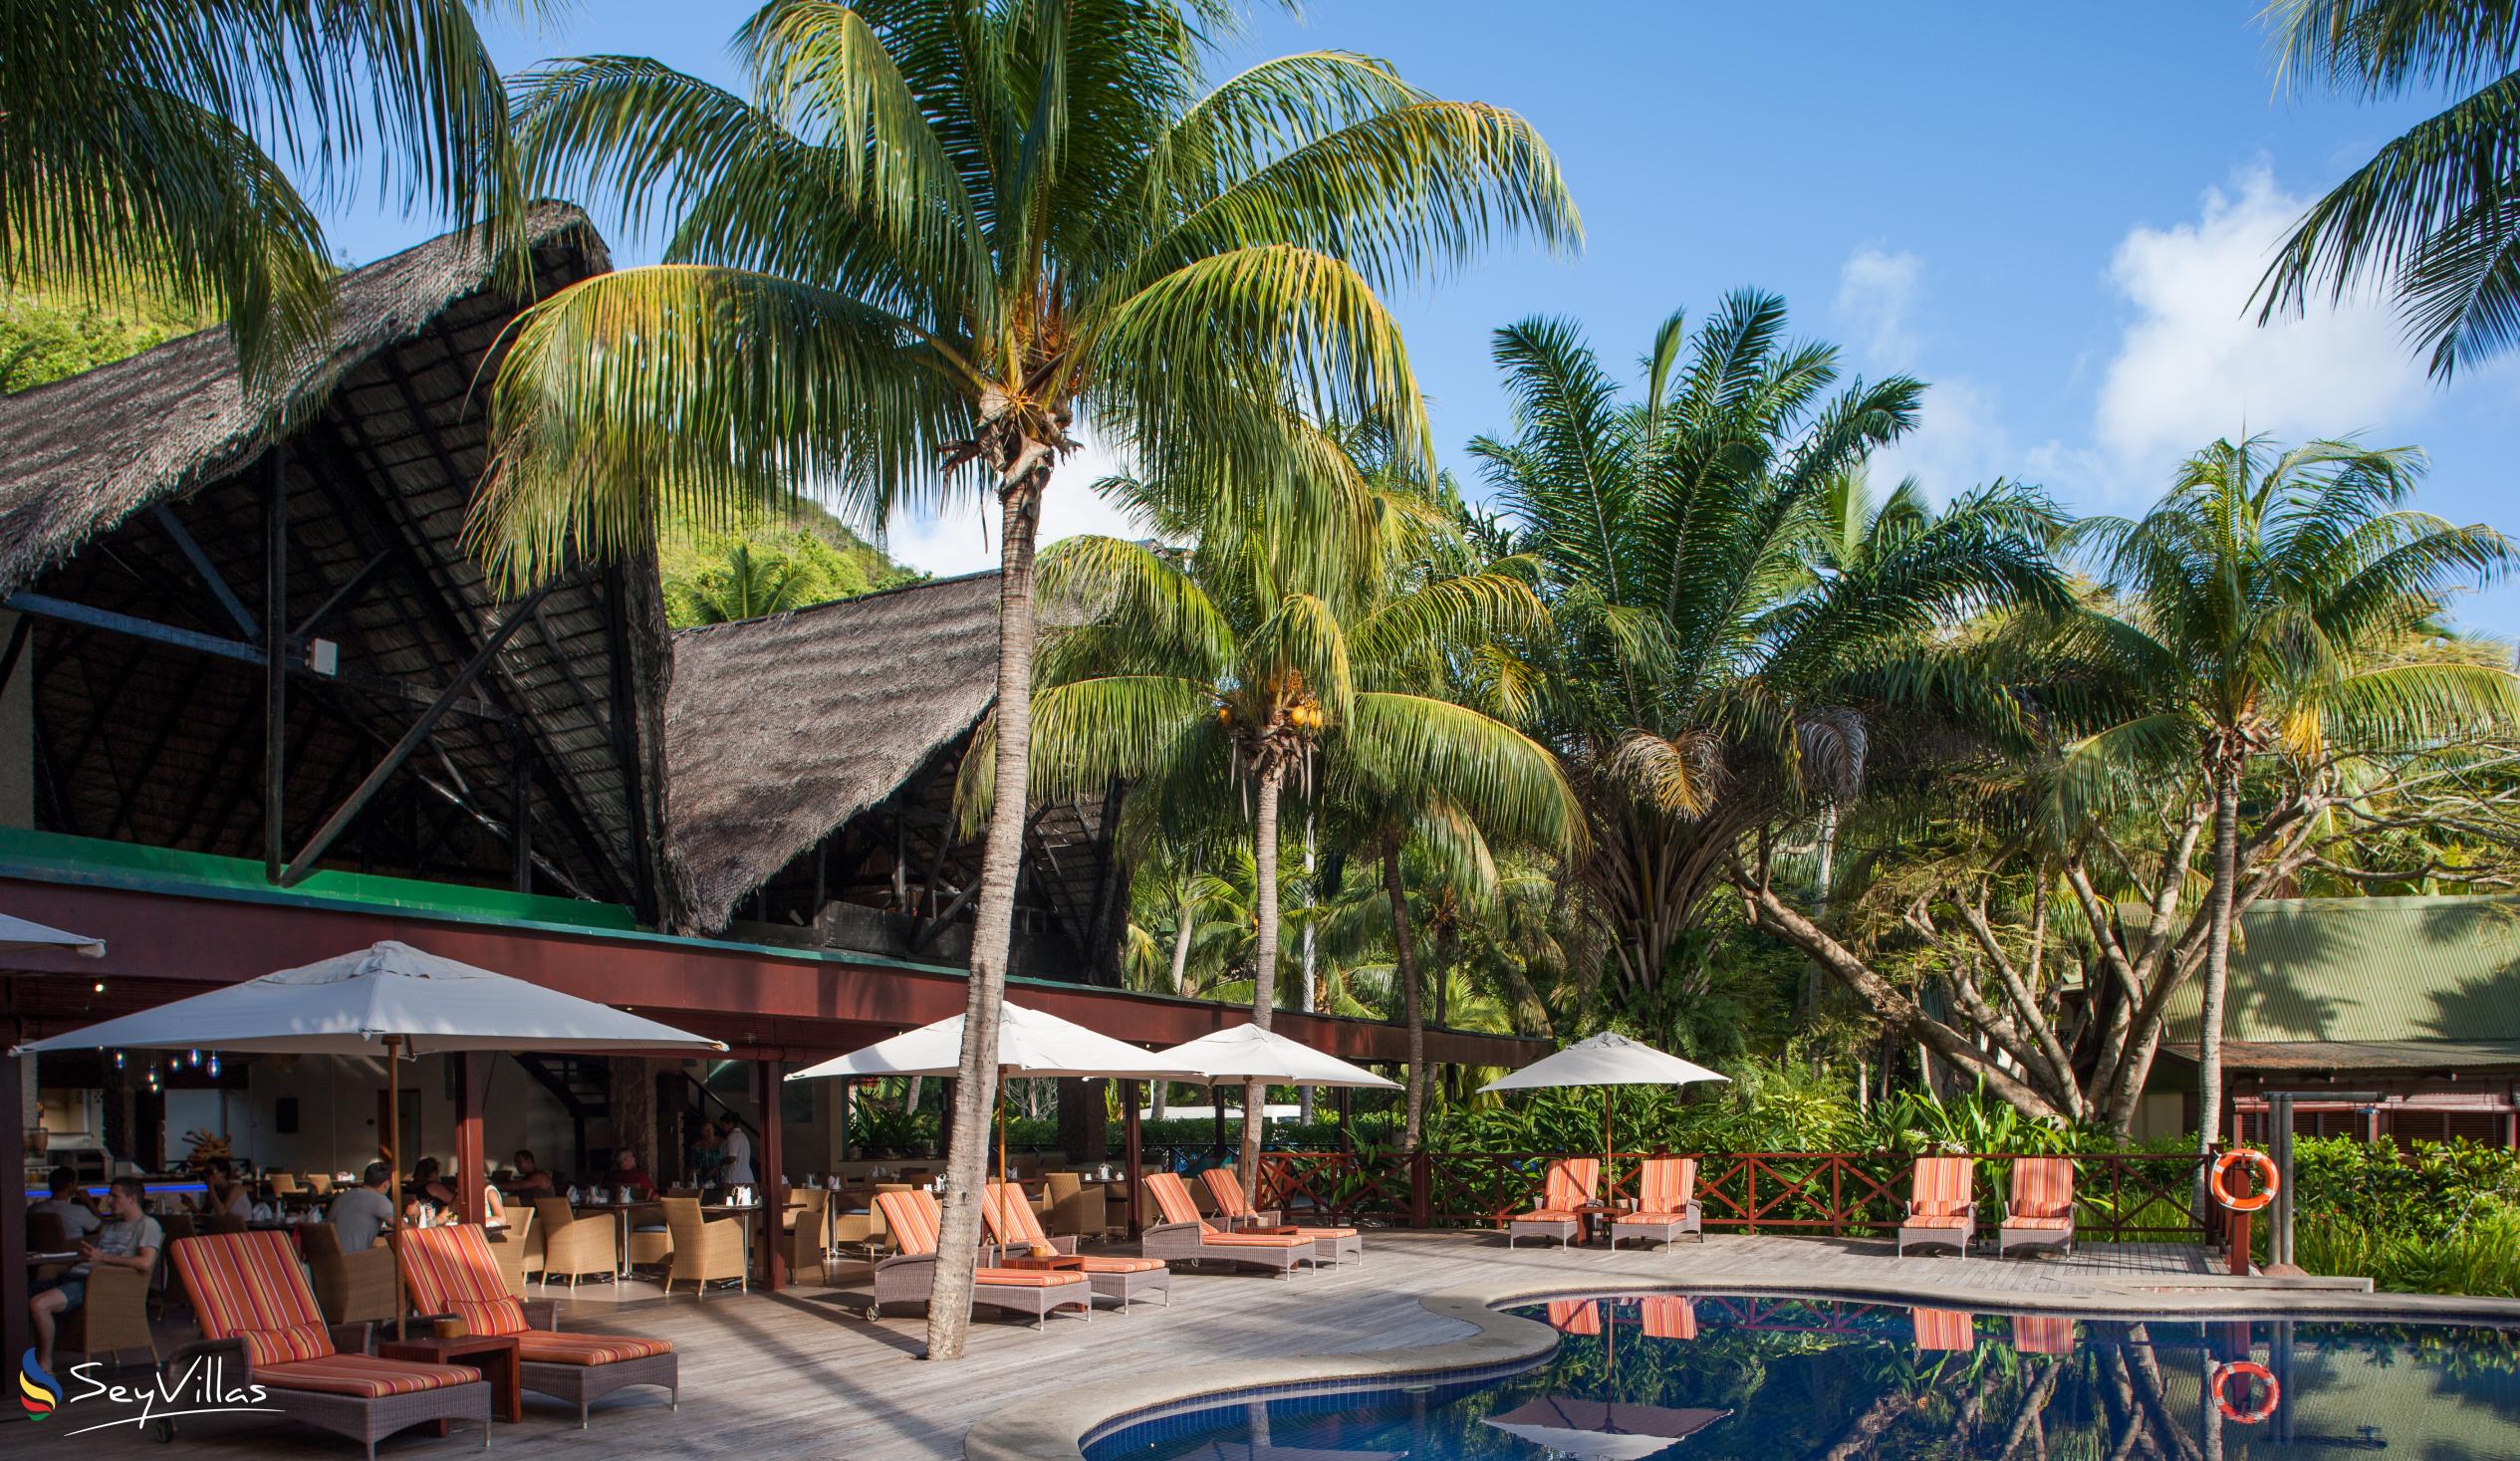 Photo 20: Paradise Sun Hotel - Outdoor area - Praslin (Seychelles)